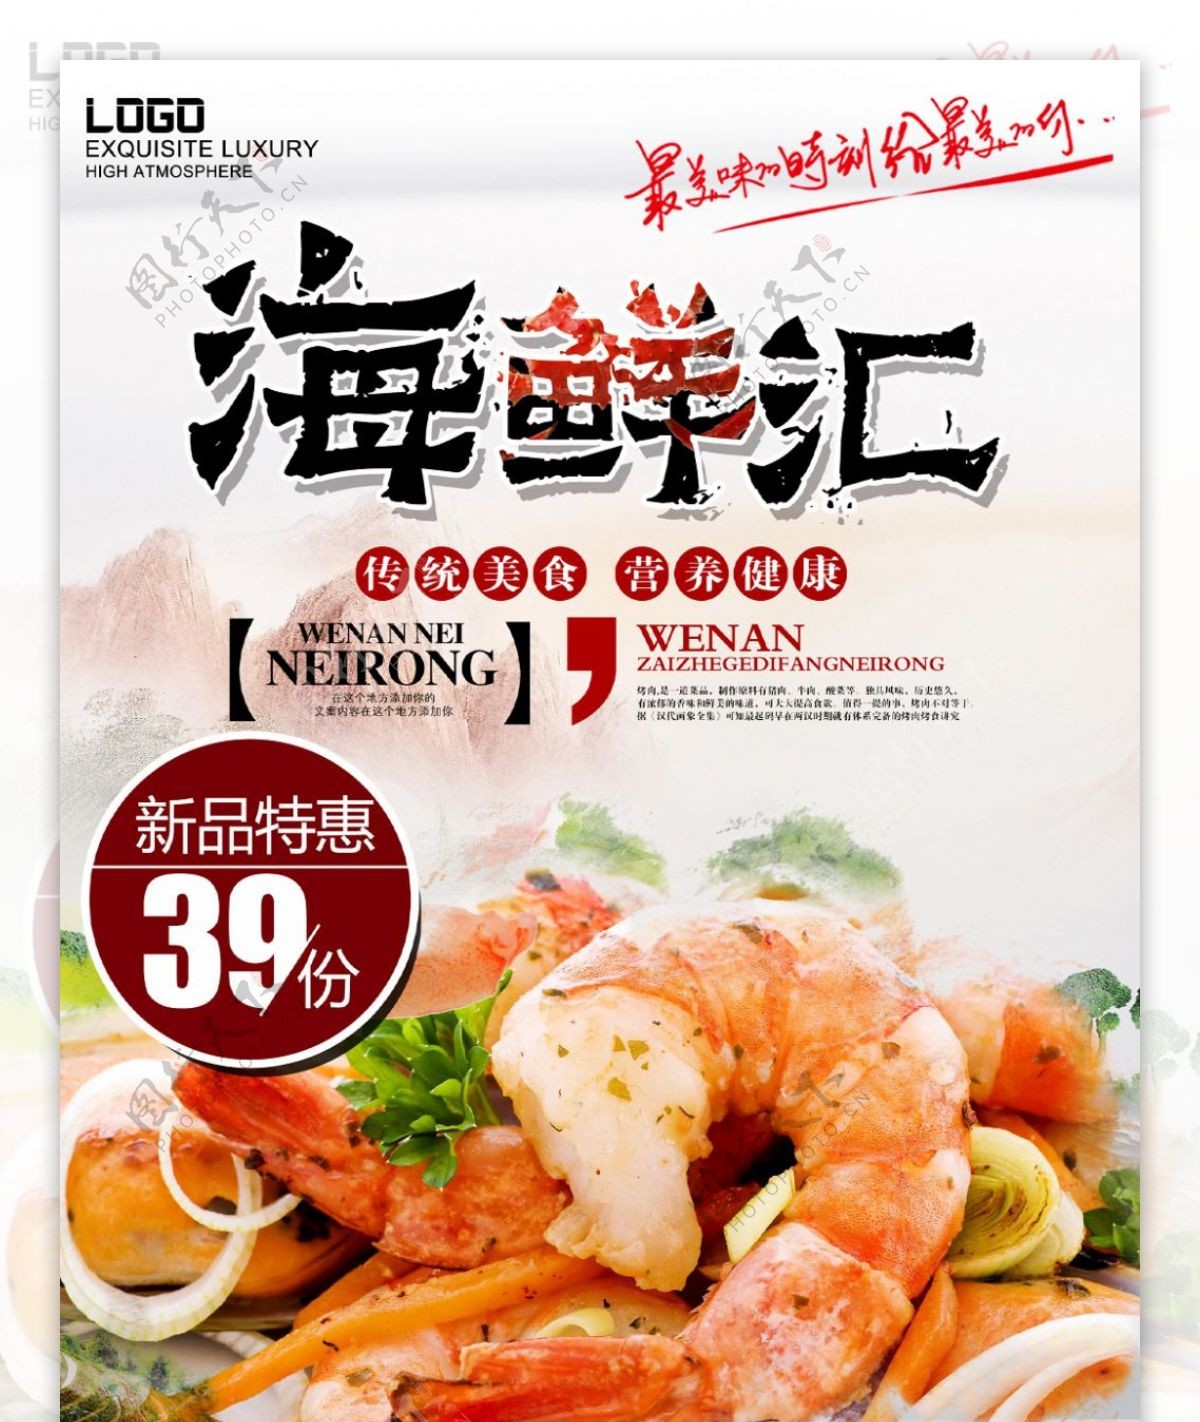 冬季美食海鲜大排档促销活动海报